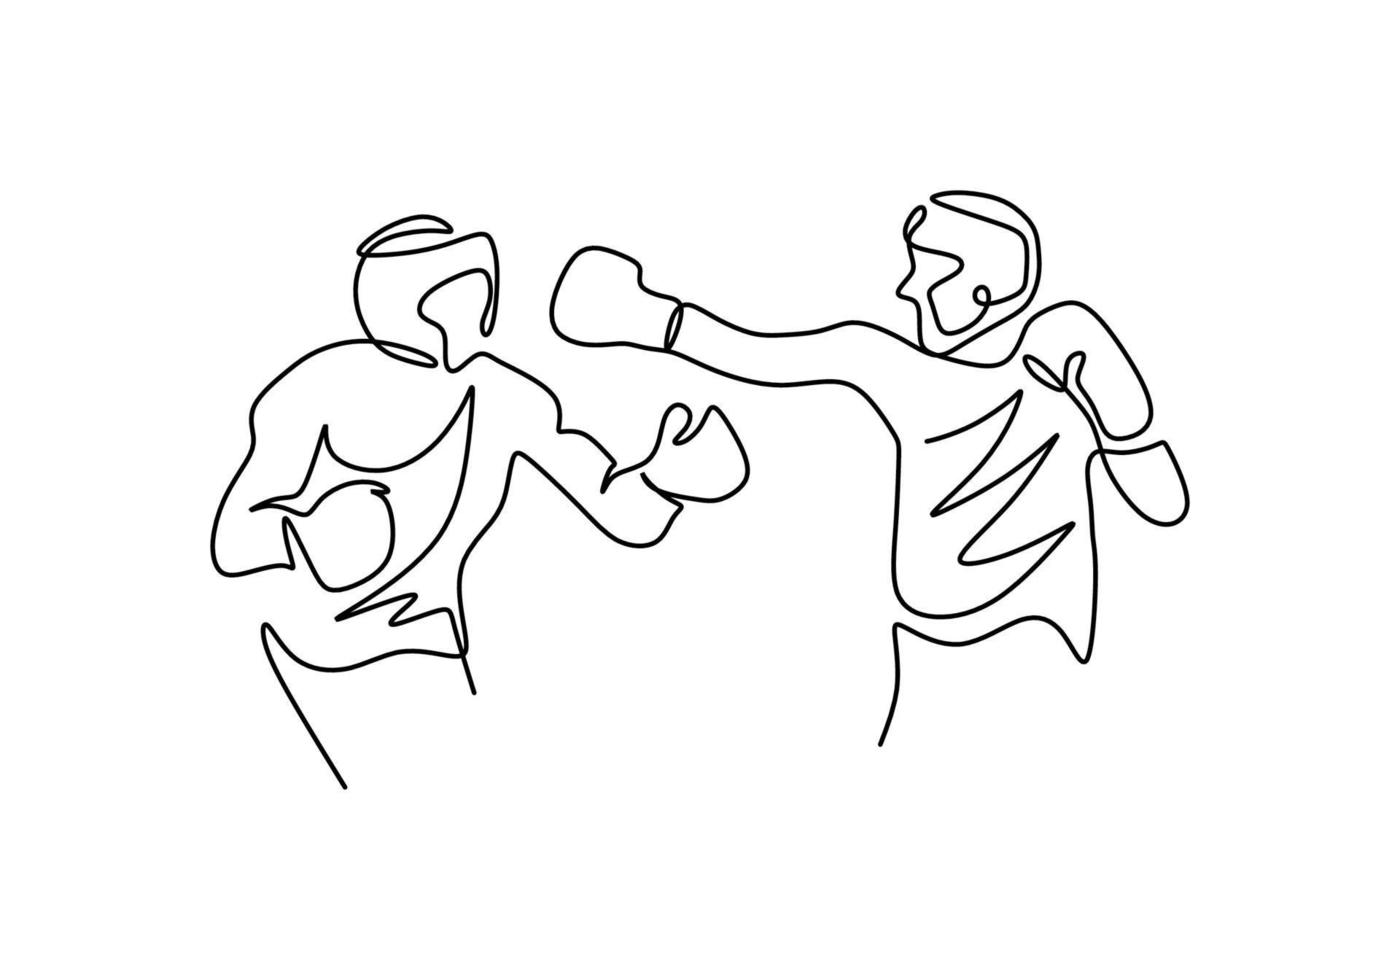 continuo un disegno a tratteggio di due uomini che giocano boxe isolati su sfondo bianco. uomo giovane pugile professionista facendo stretching prima di praticare la boxe. illustrazione vettoriale stile minimalista